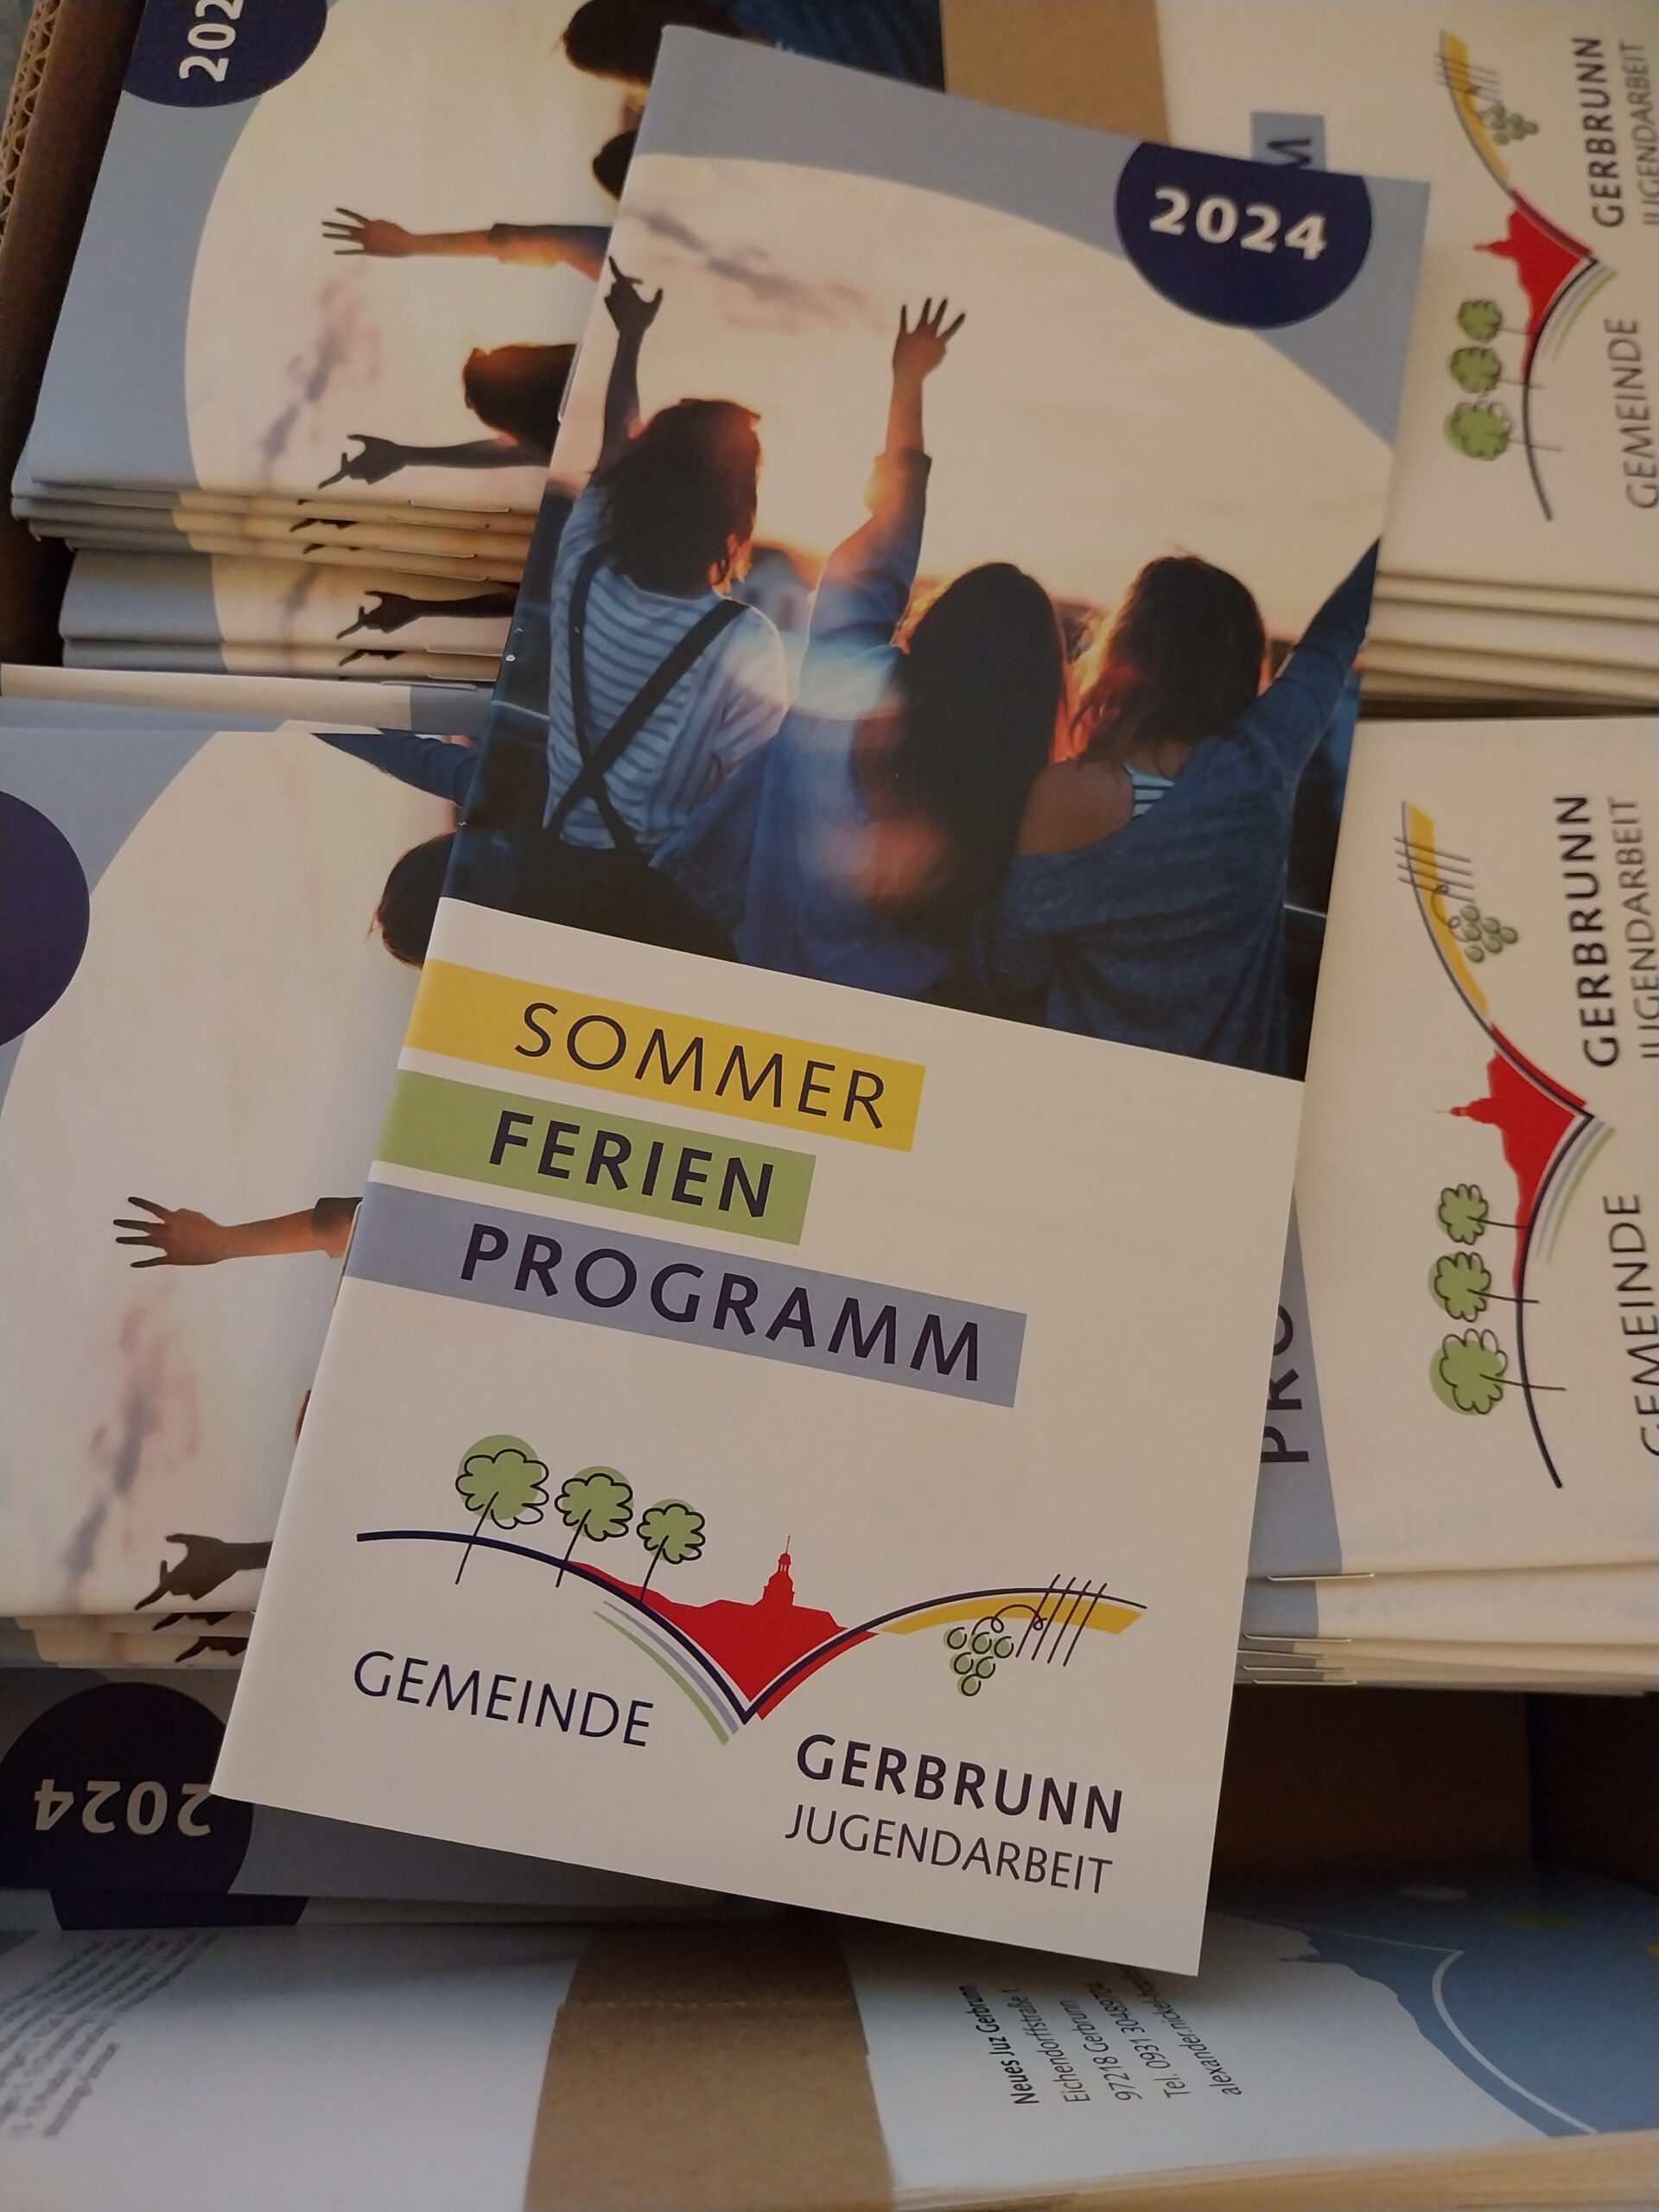 Anmeldung Sommerferienprogramm